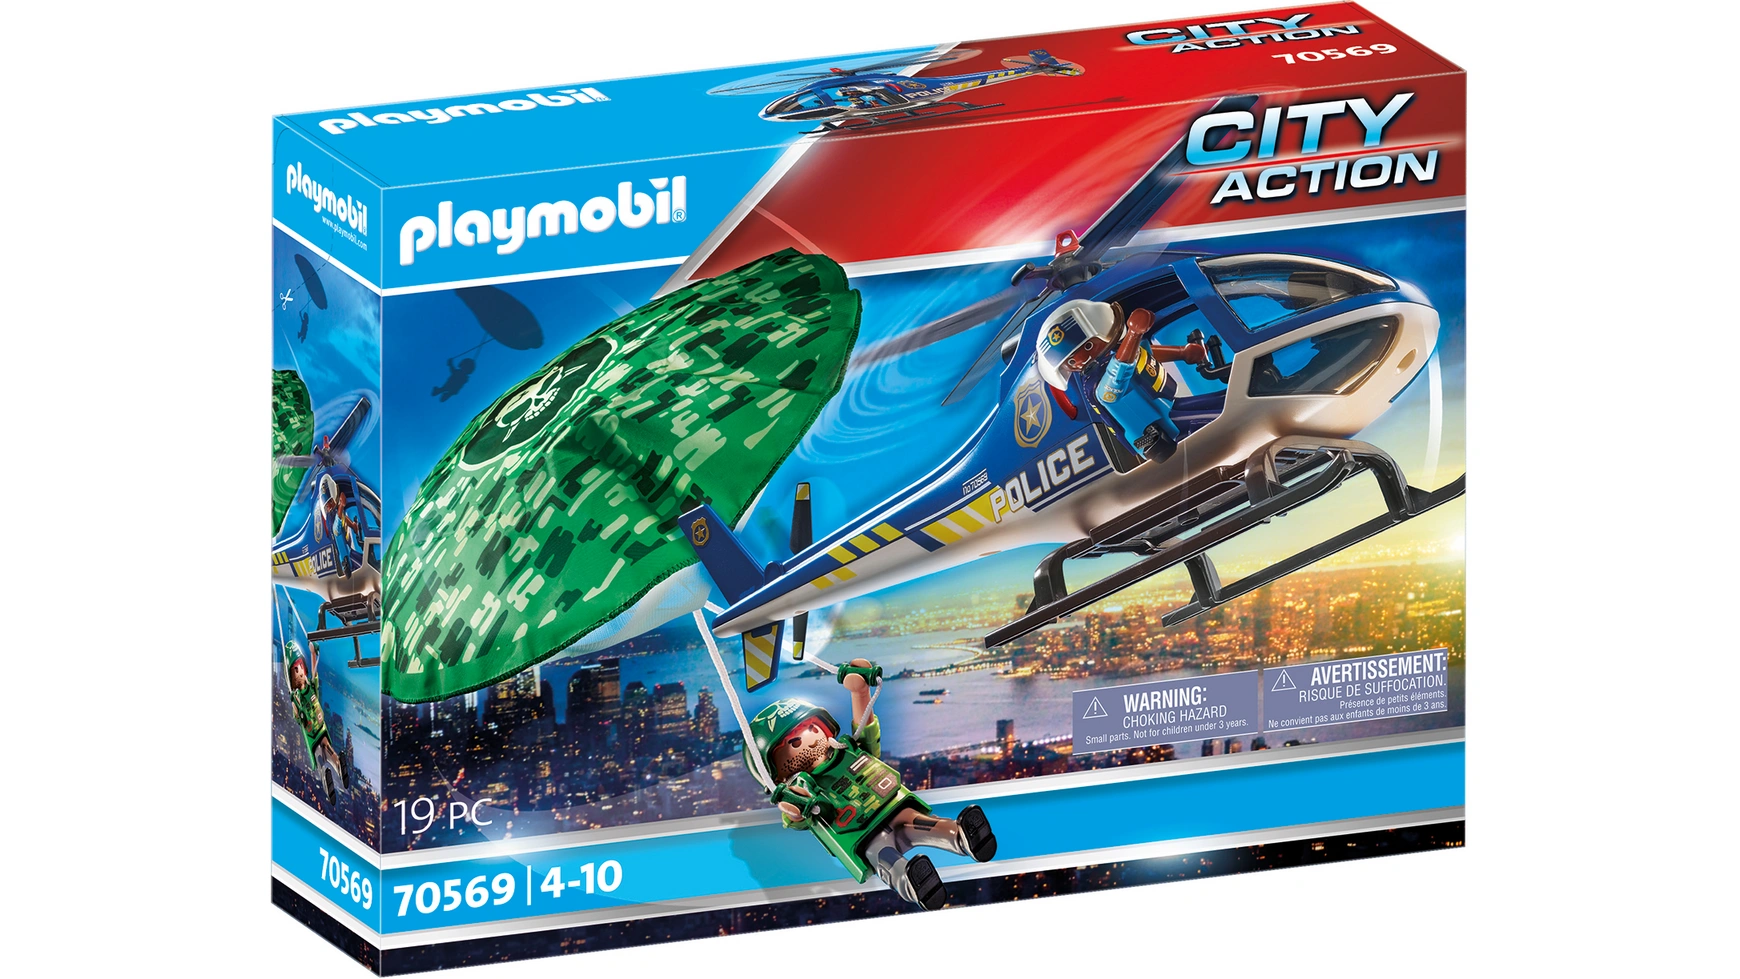 City action полицейский вертолет: погоня с парашютом Playmobil цена и фото